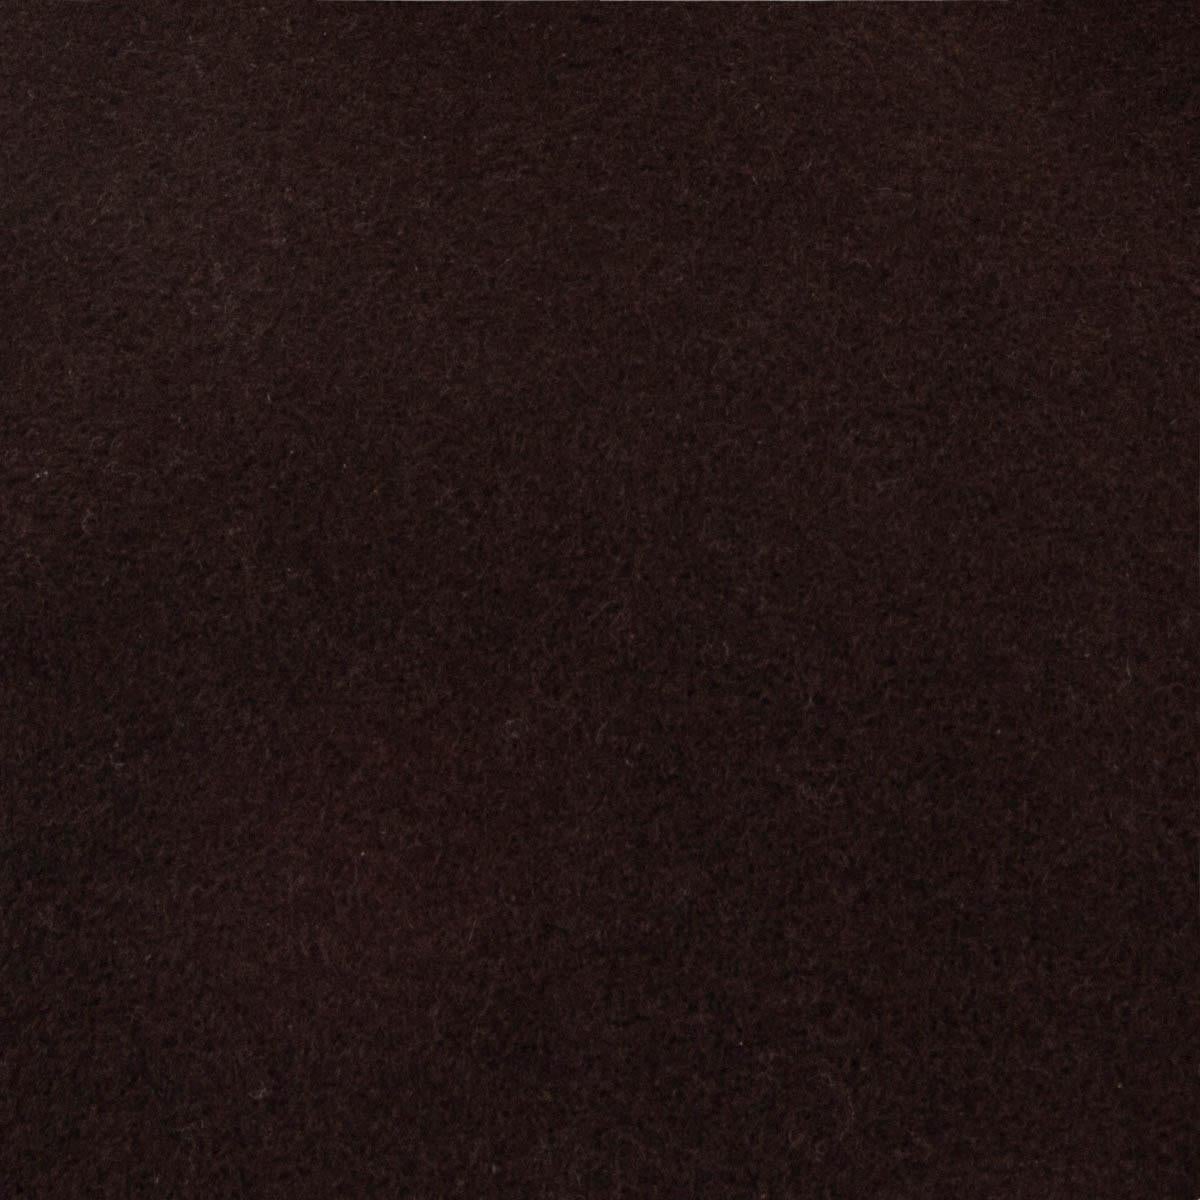 Black AKRIS PUNTO dark brown wool & angora Coat Jacket 38 M